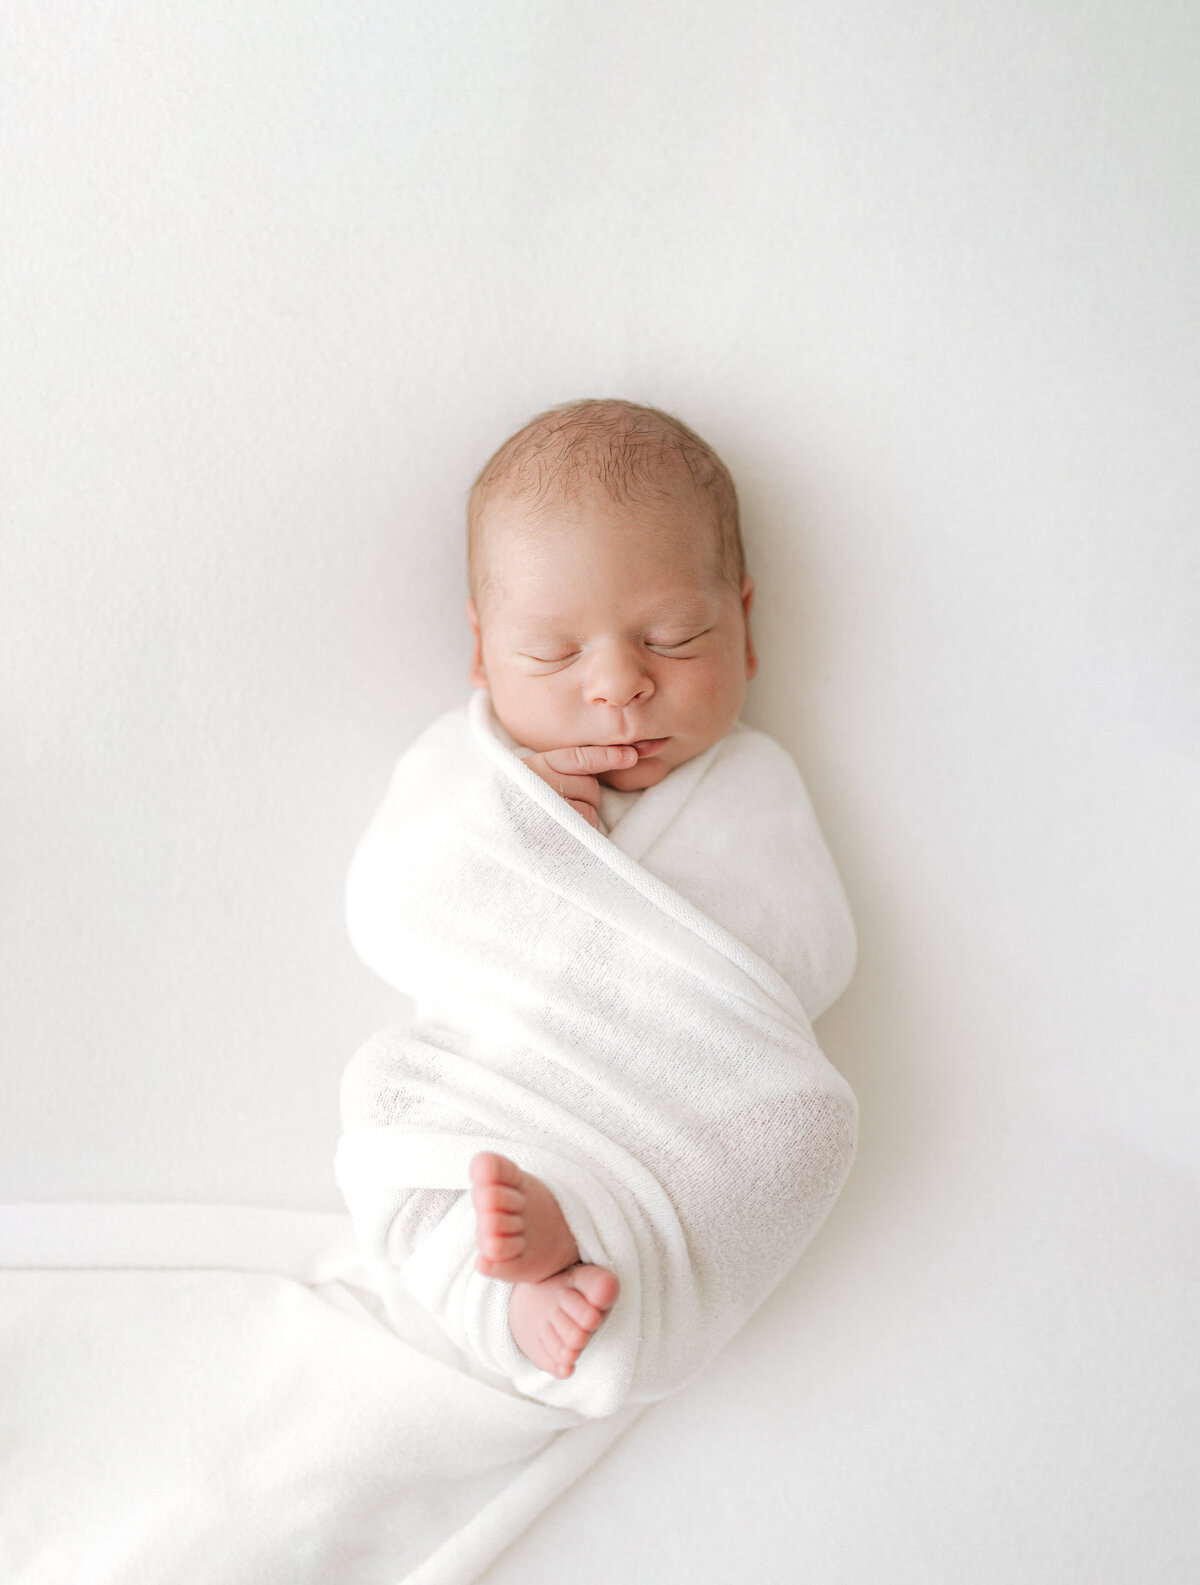 Baby swaddled during newborn photoshoot